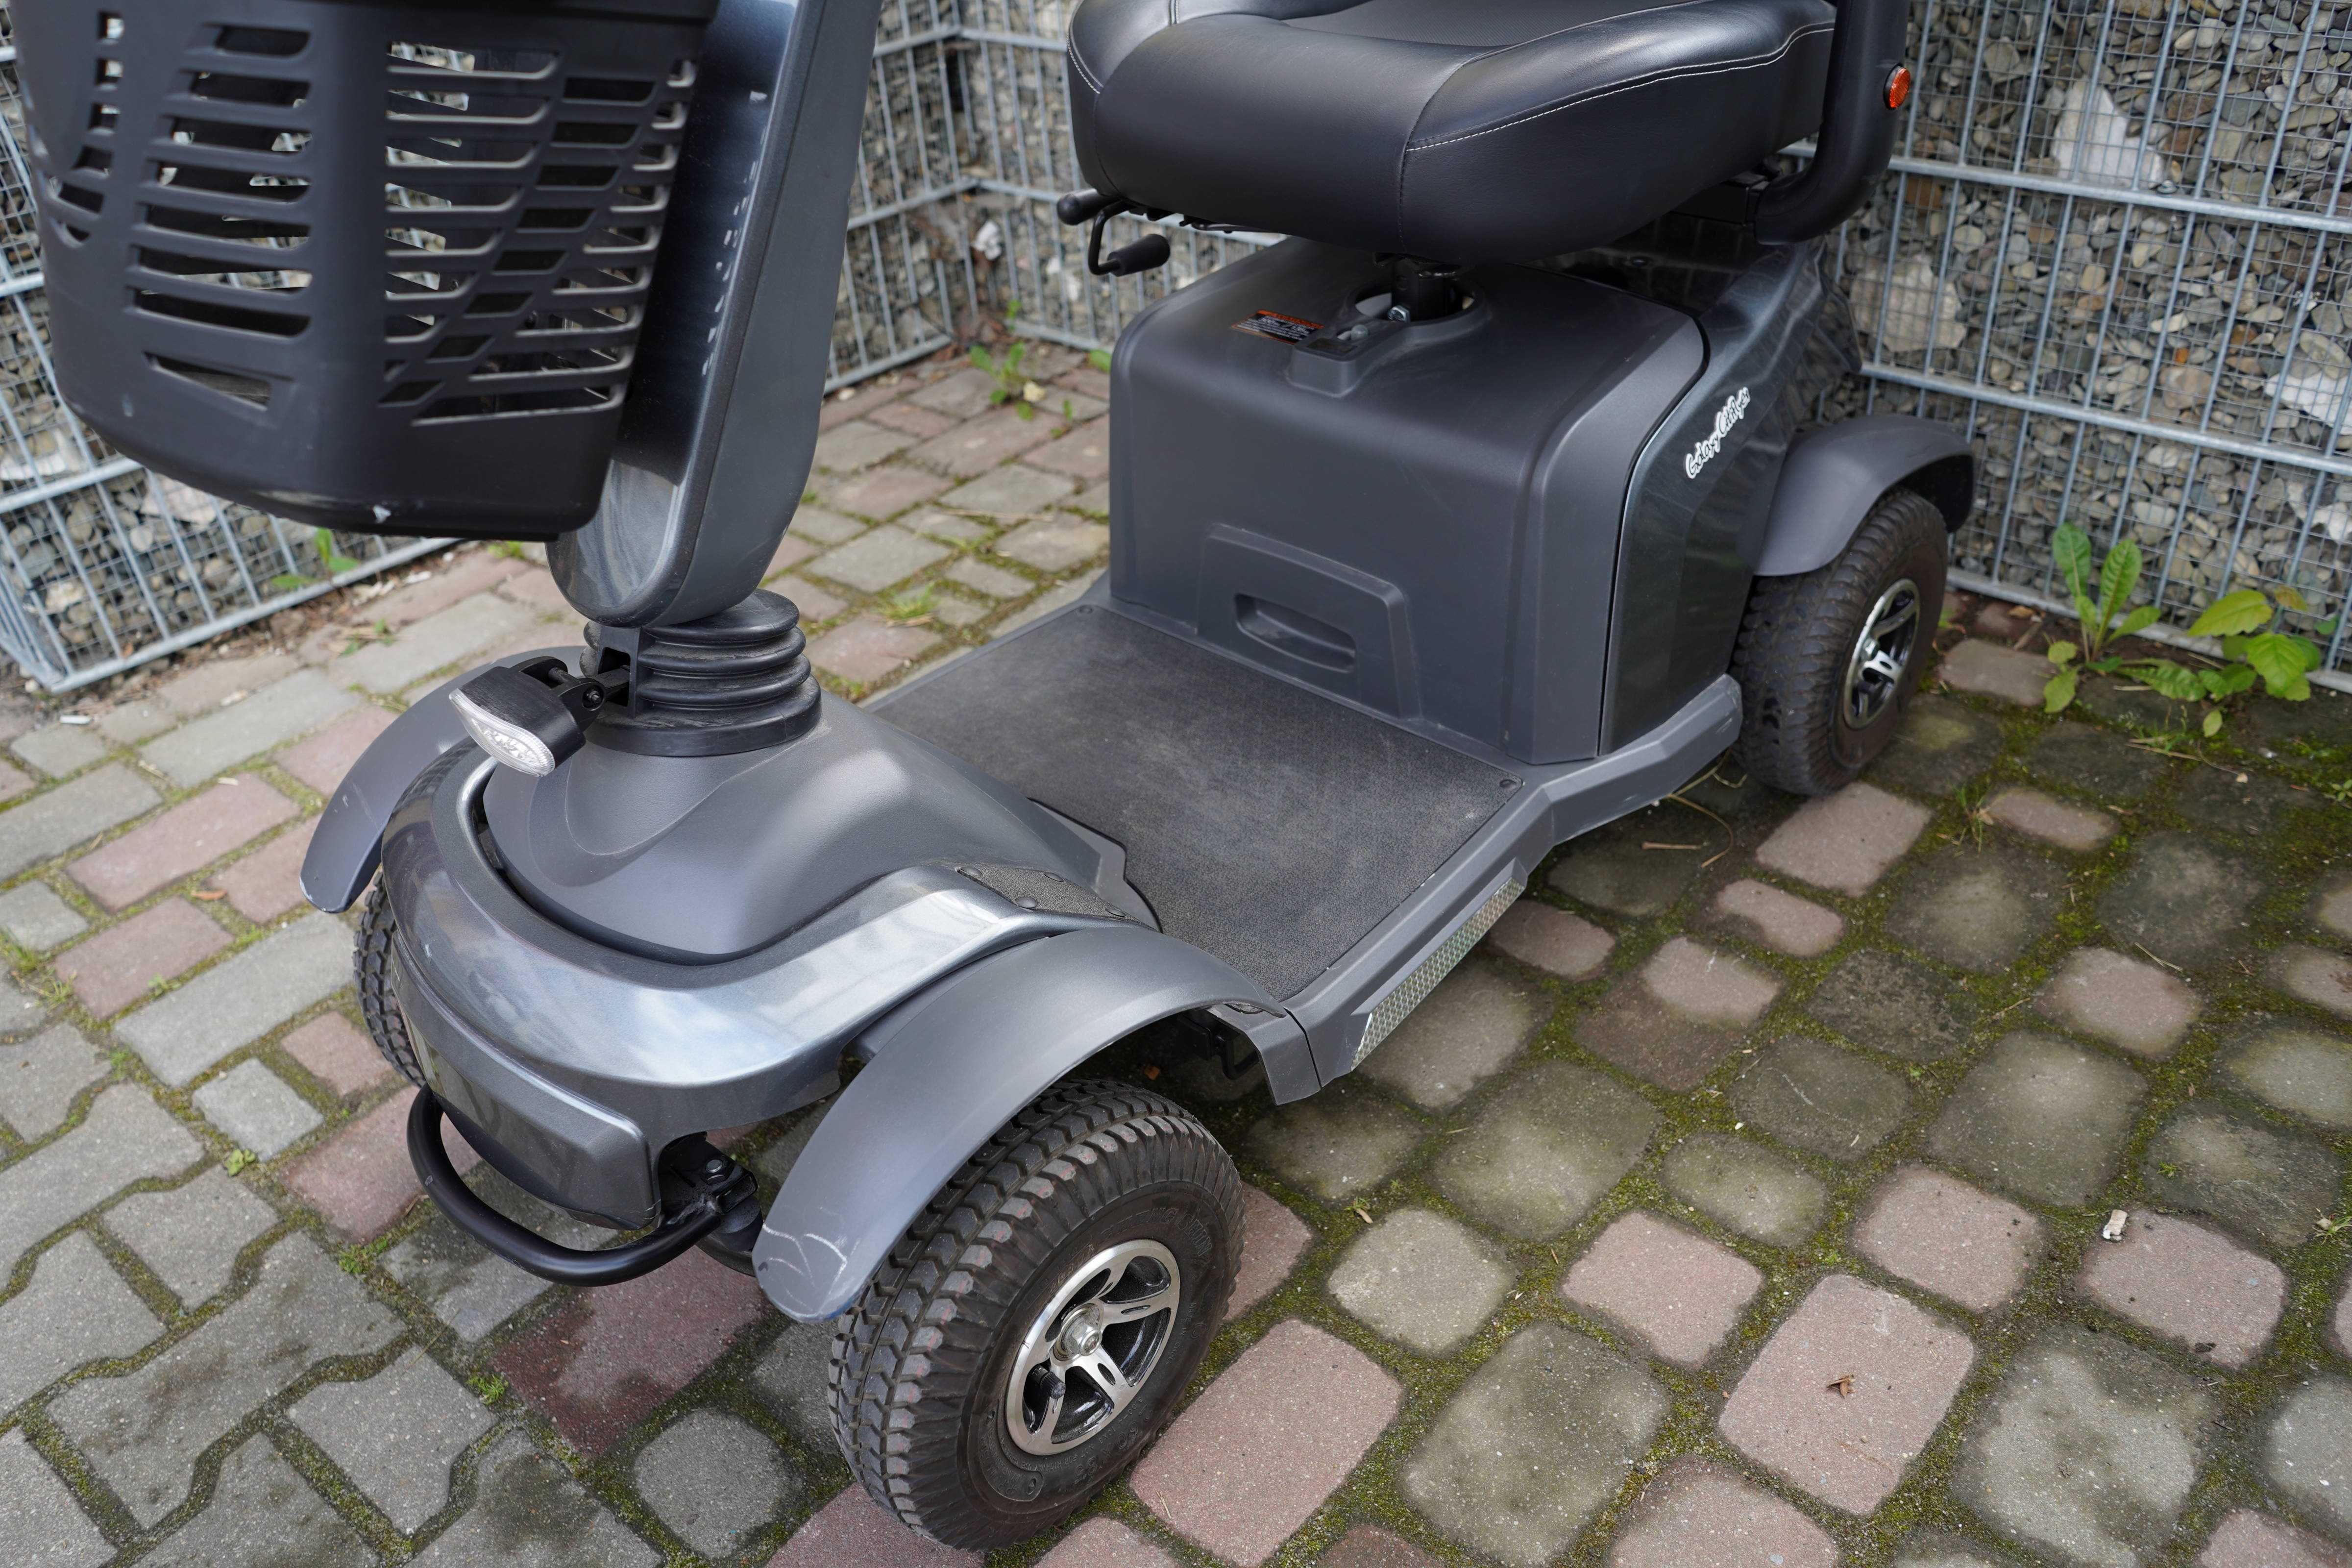 Galaxy Cityflyer skuter inwalidzki elektryczny pojazd wózek